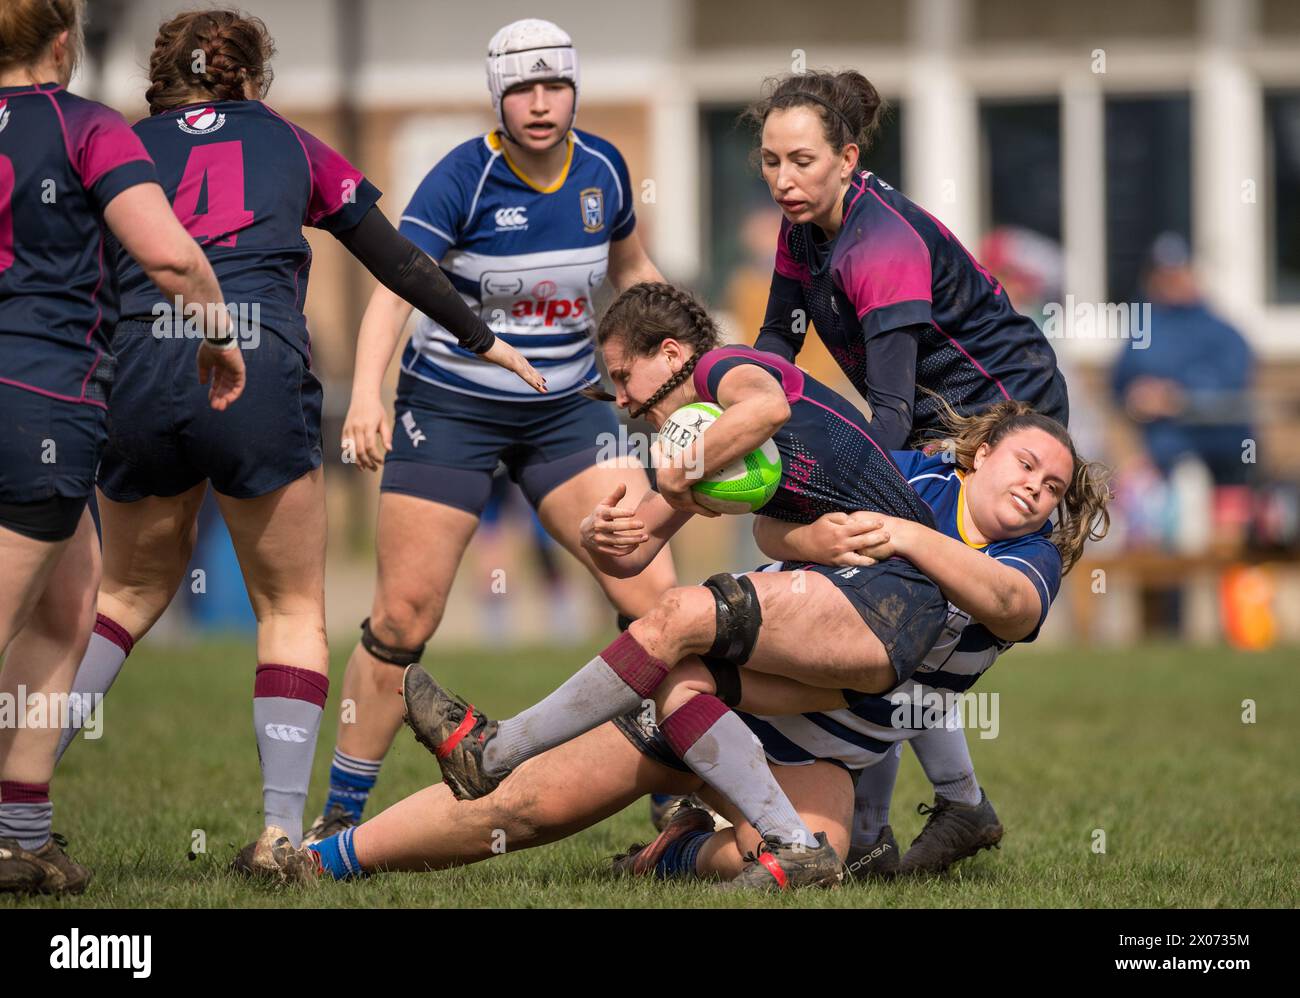 Jeu féminin amateur anglais de rugby à xv. Banque D'Images